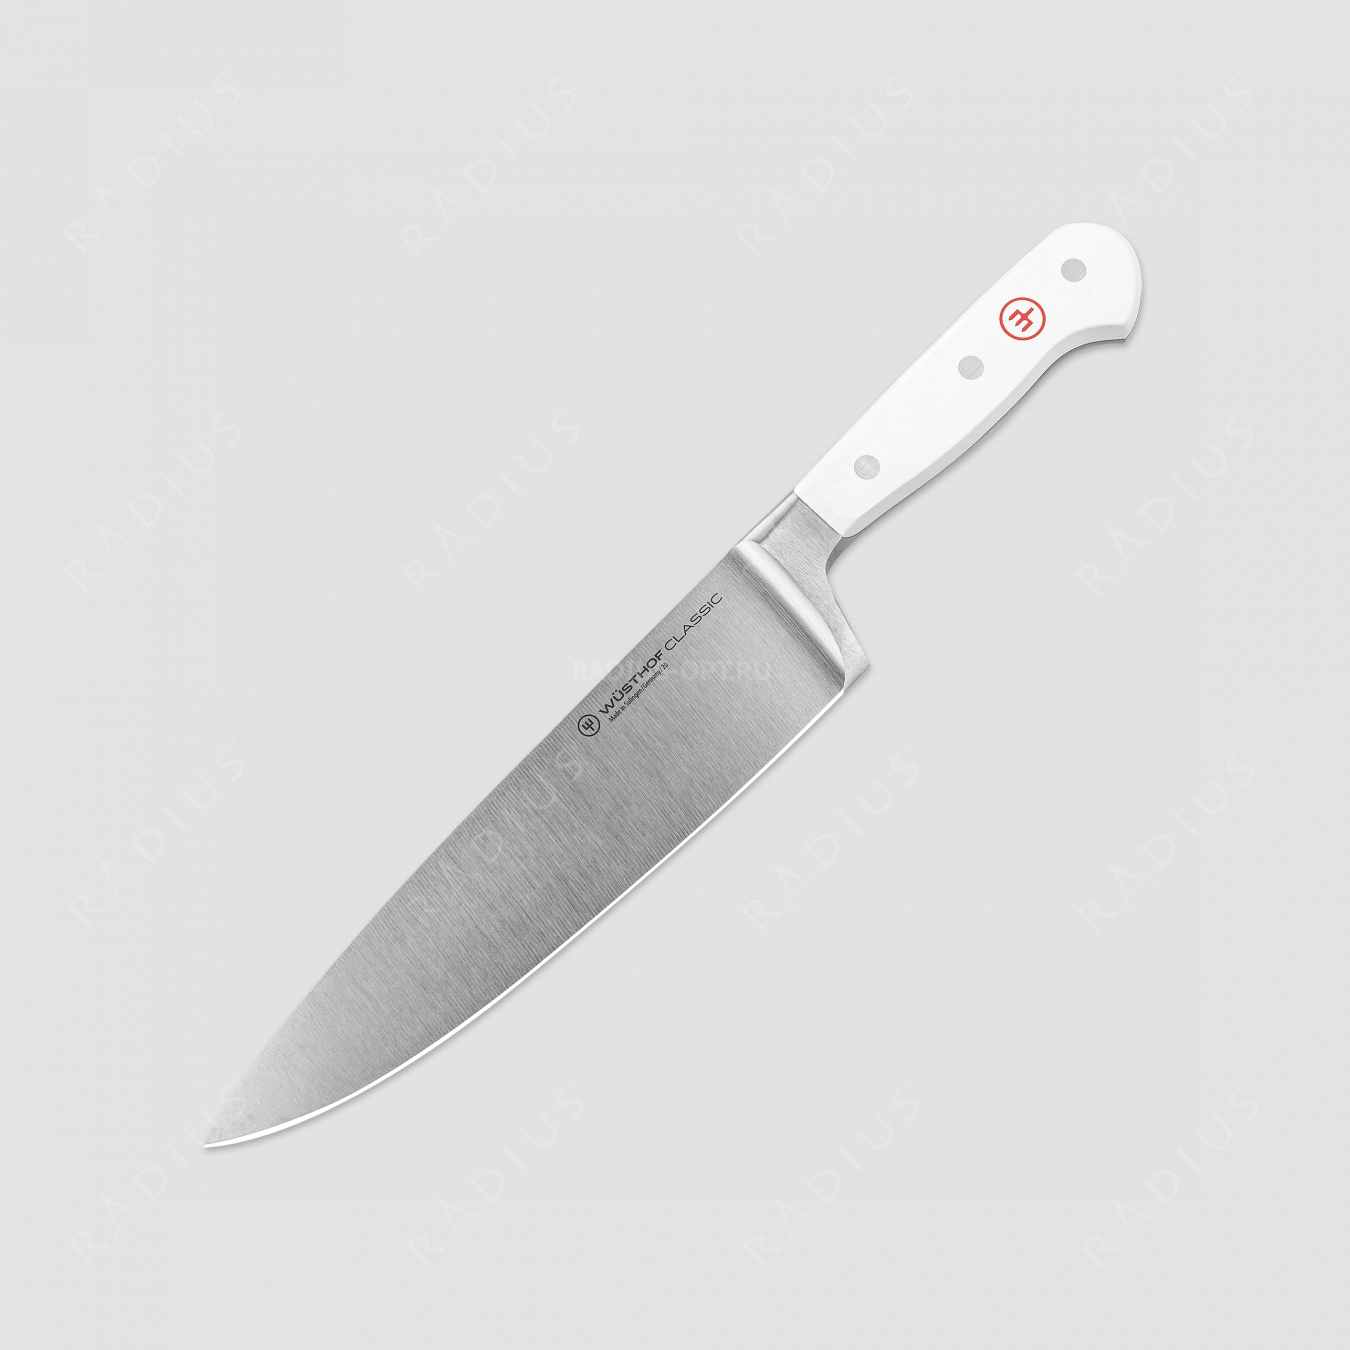 Профессиональный поварской кухонный нож «Шеф» 20 см, серия White Classic, WUESTHOF, Золинген, Германия